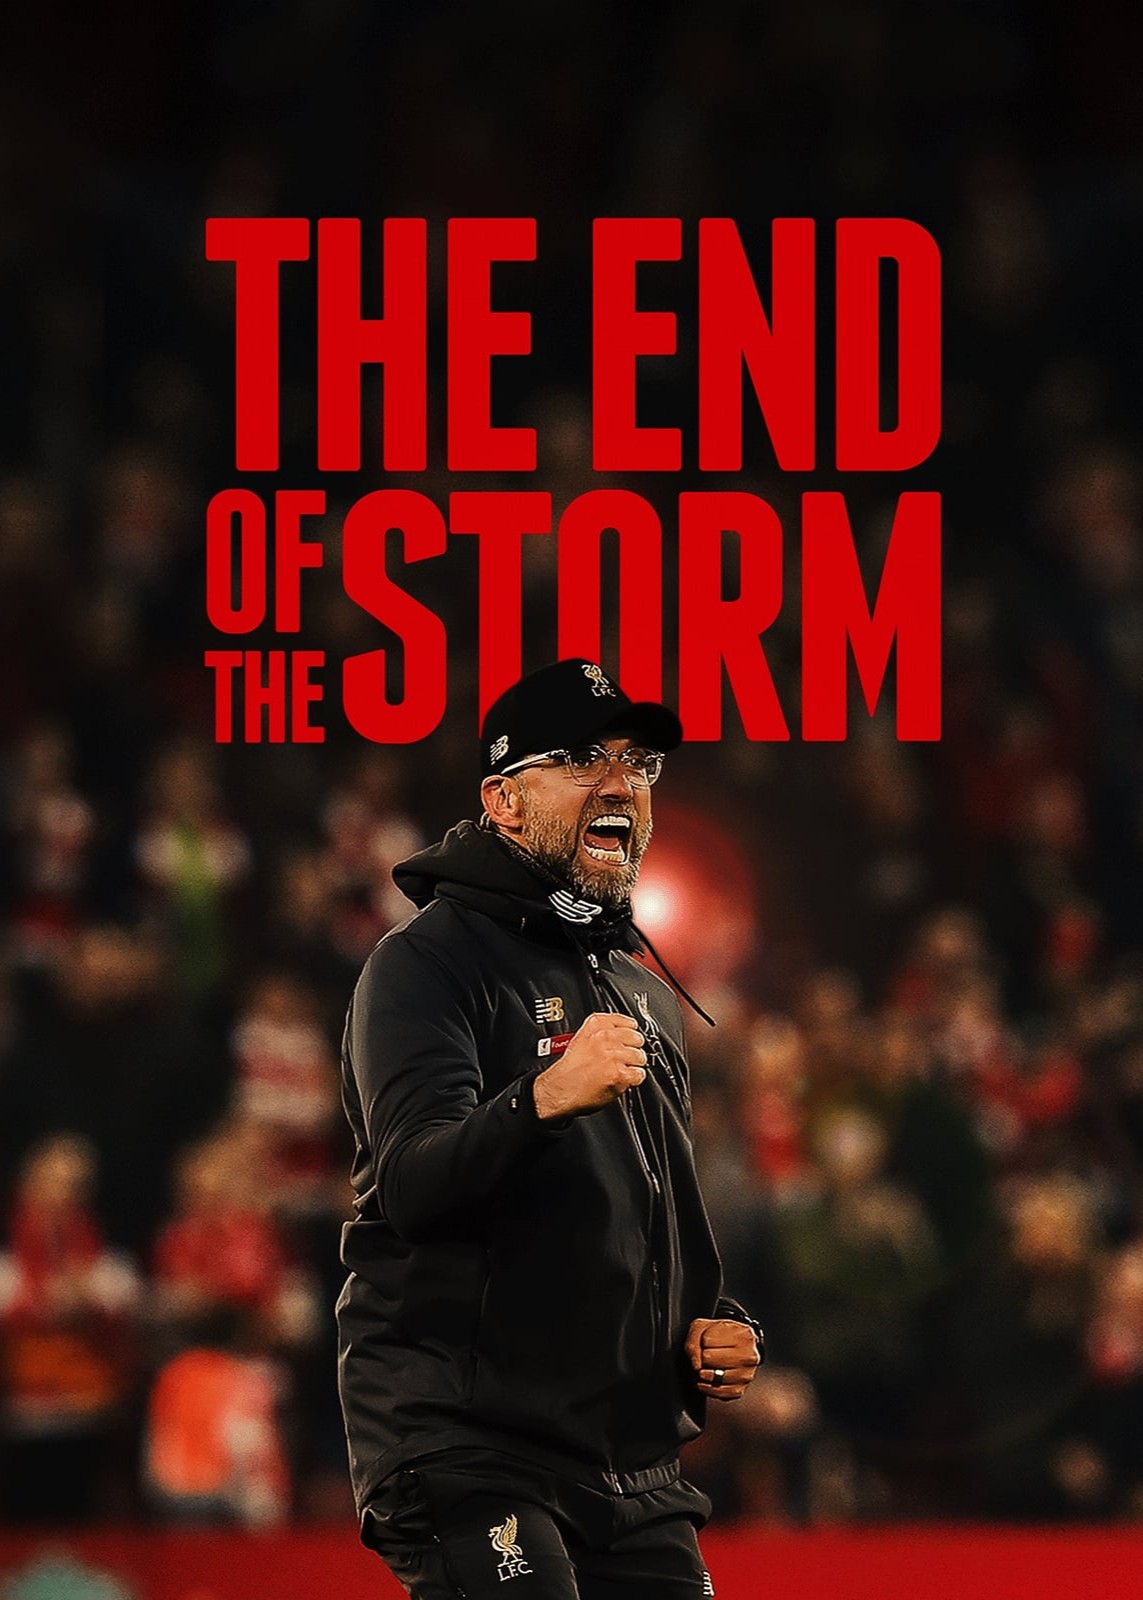 The End of the Storm - The End of the Storm